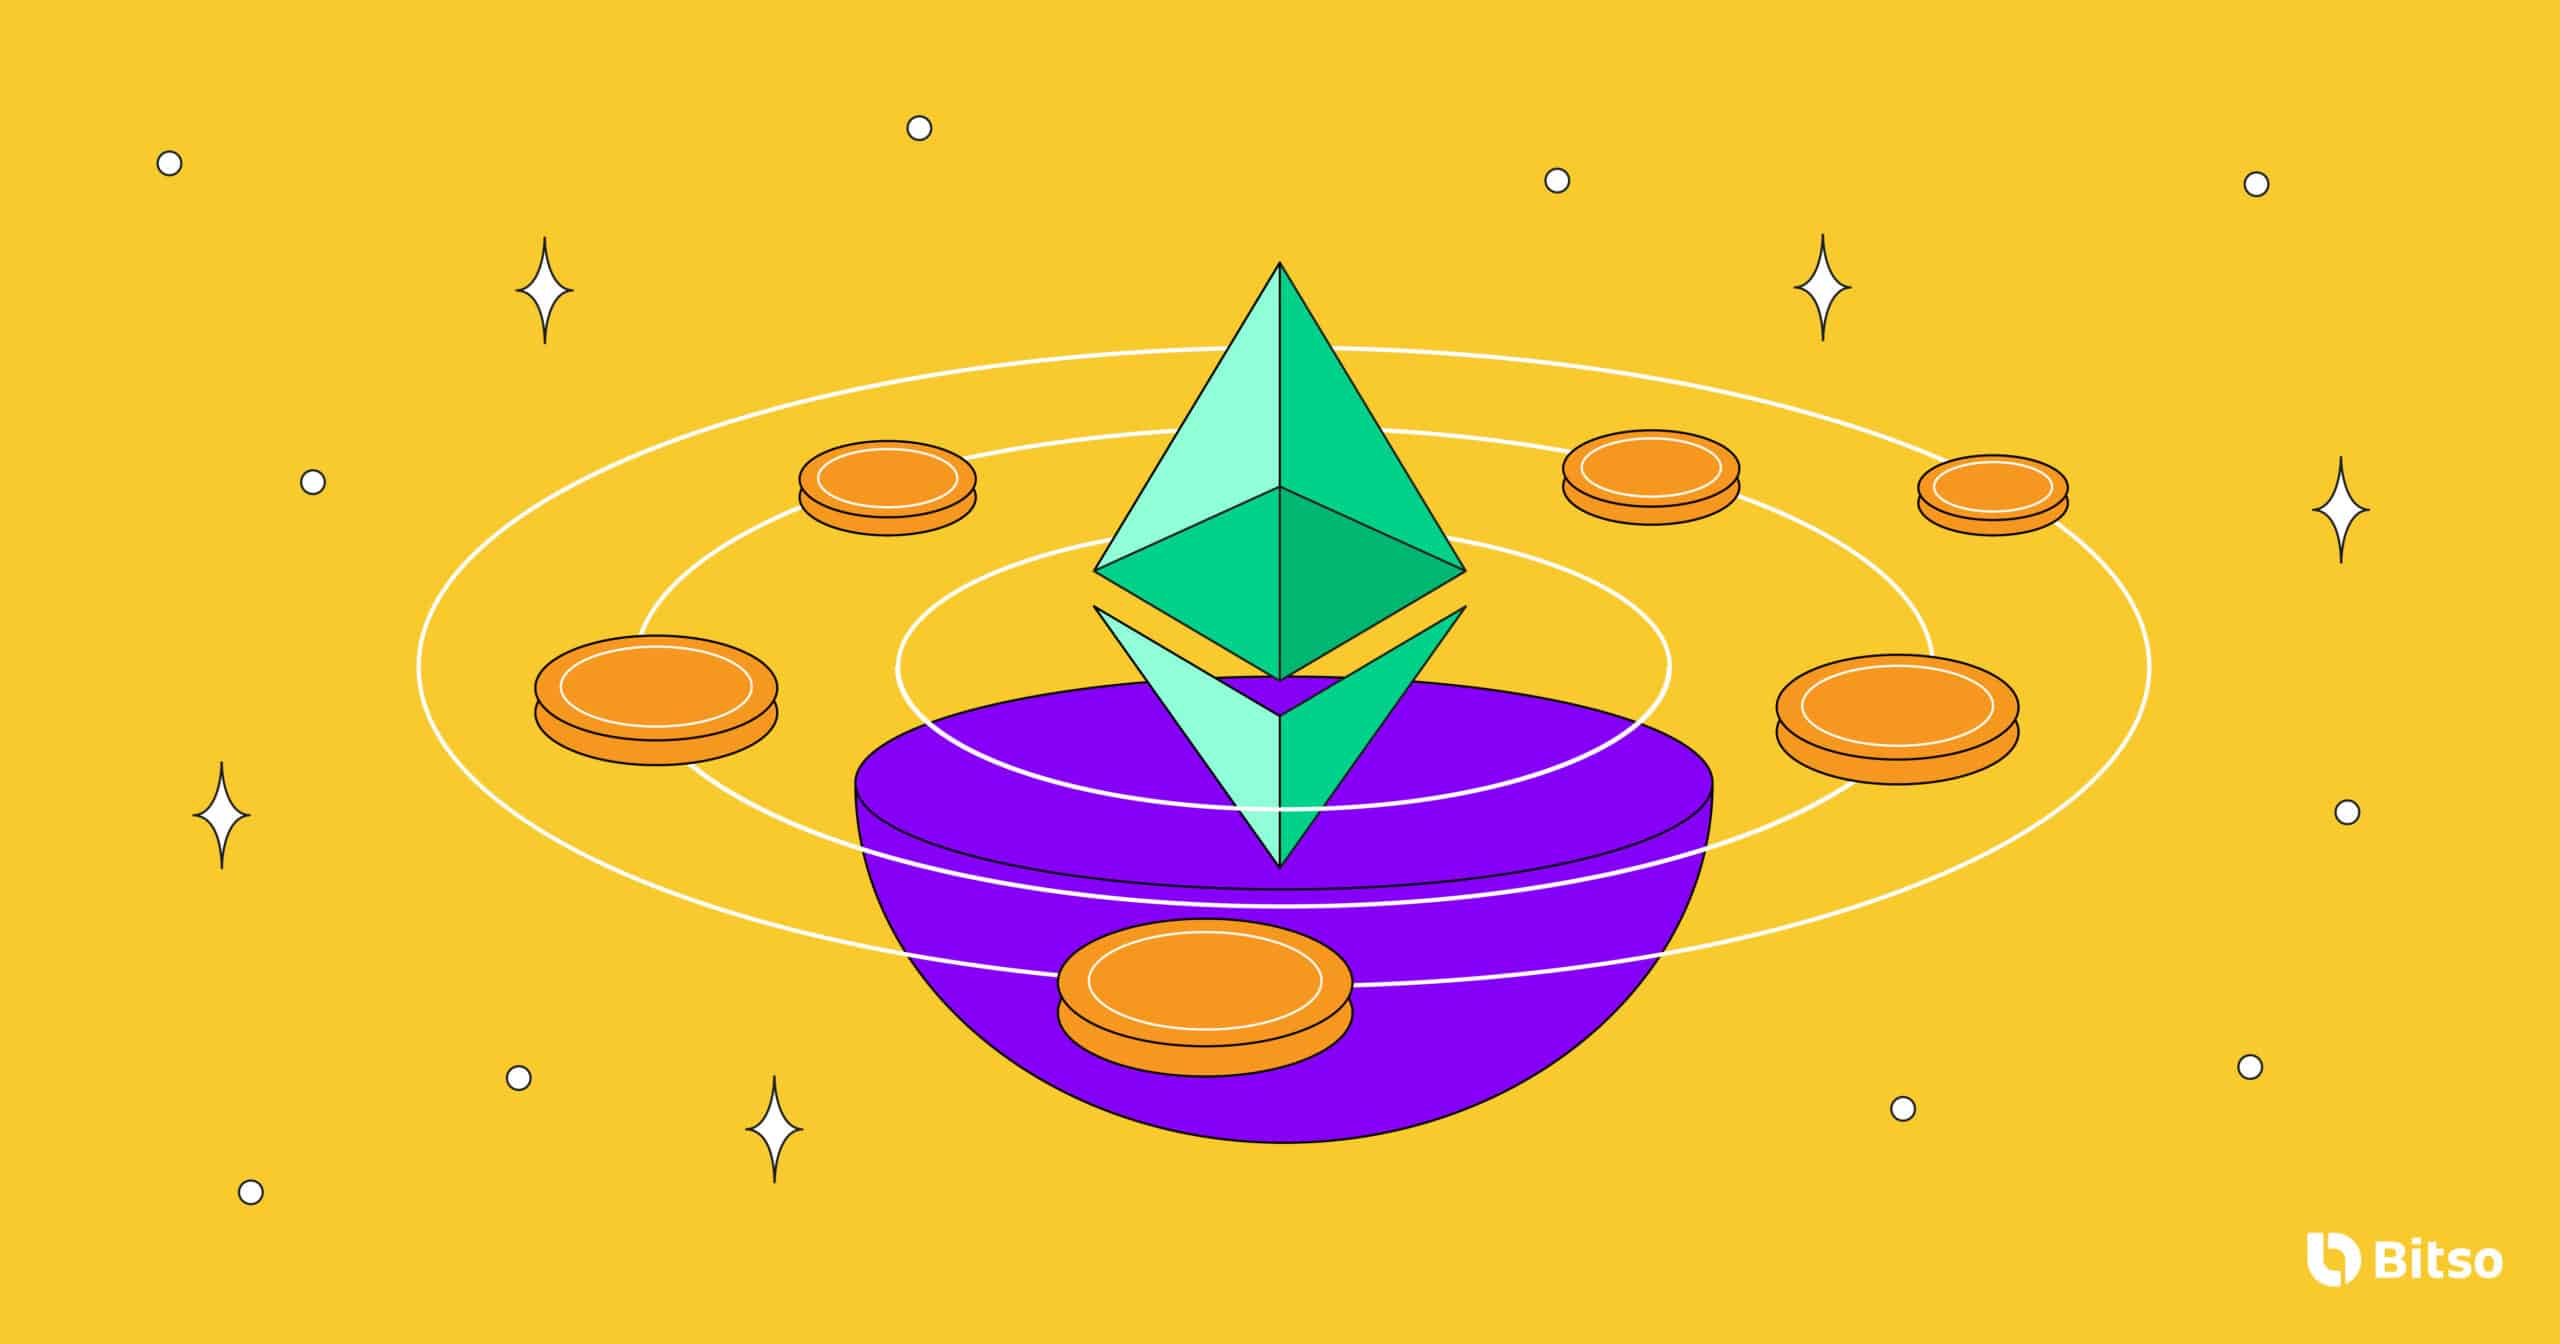 Imagem do logo da Ethereum no centro com moedas ao seu redor.